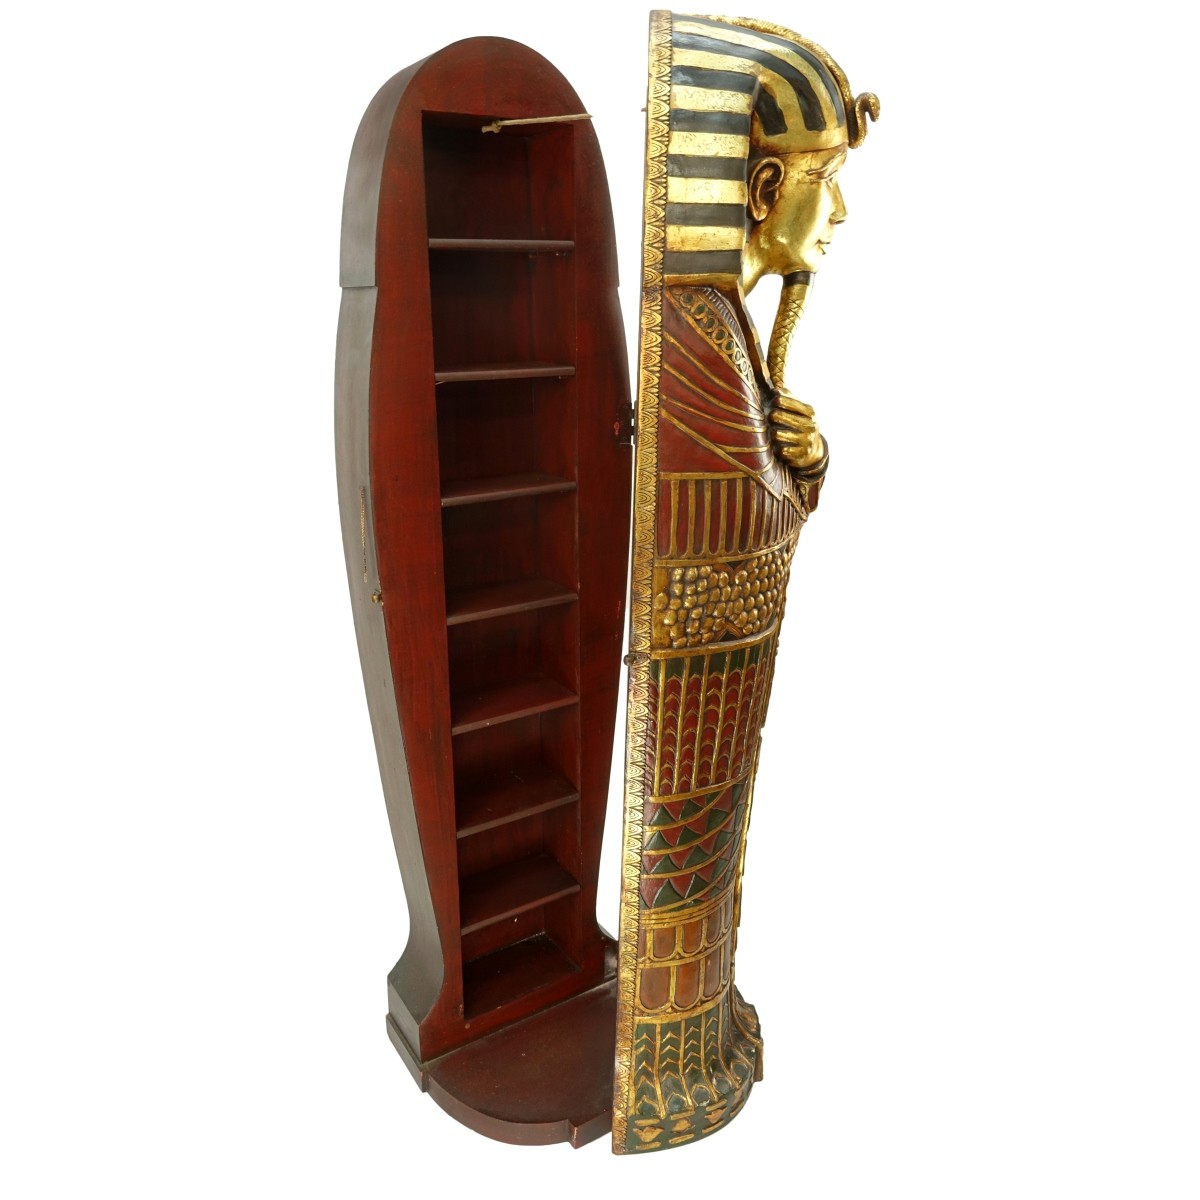 Egyptian Sarcophagus Book Case